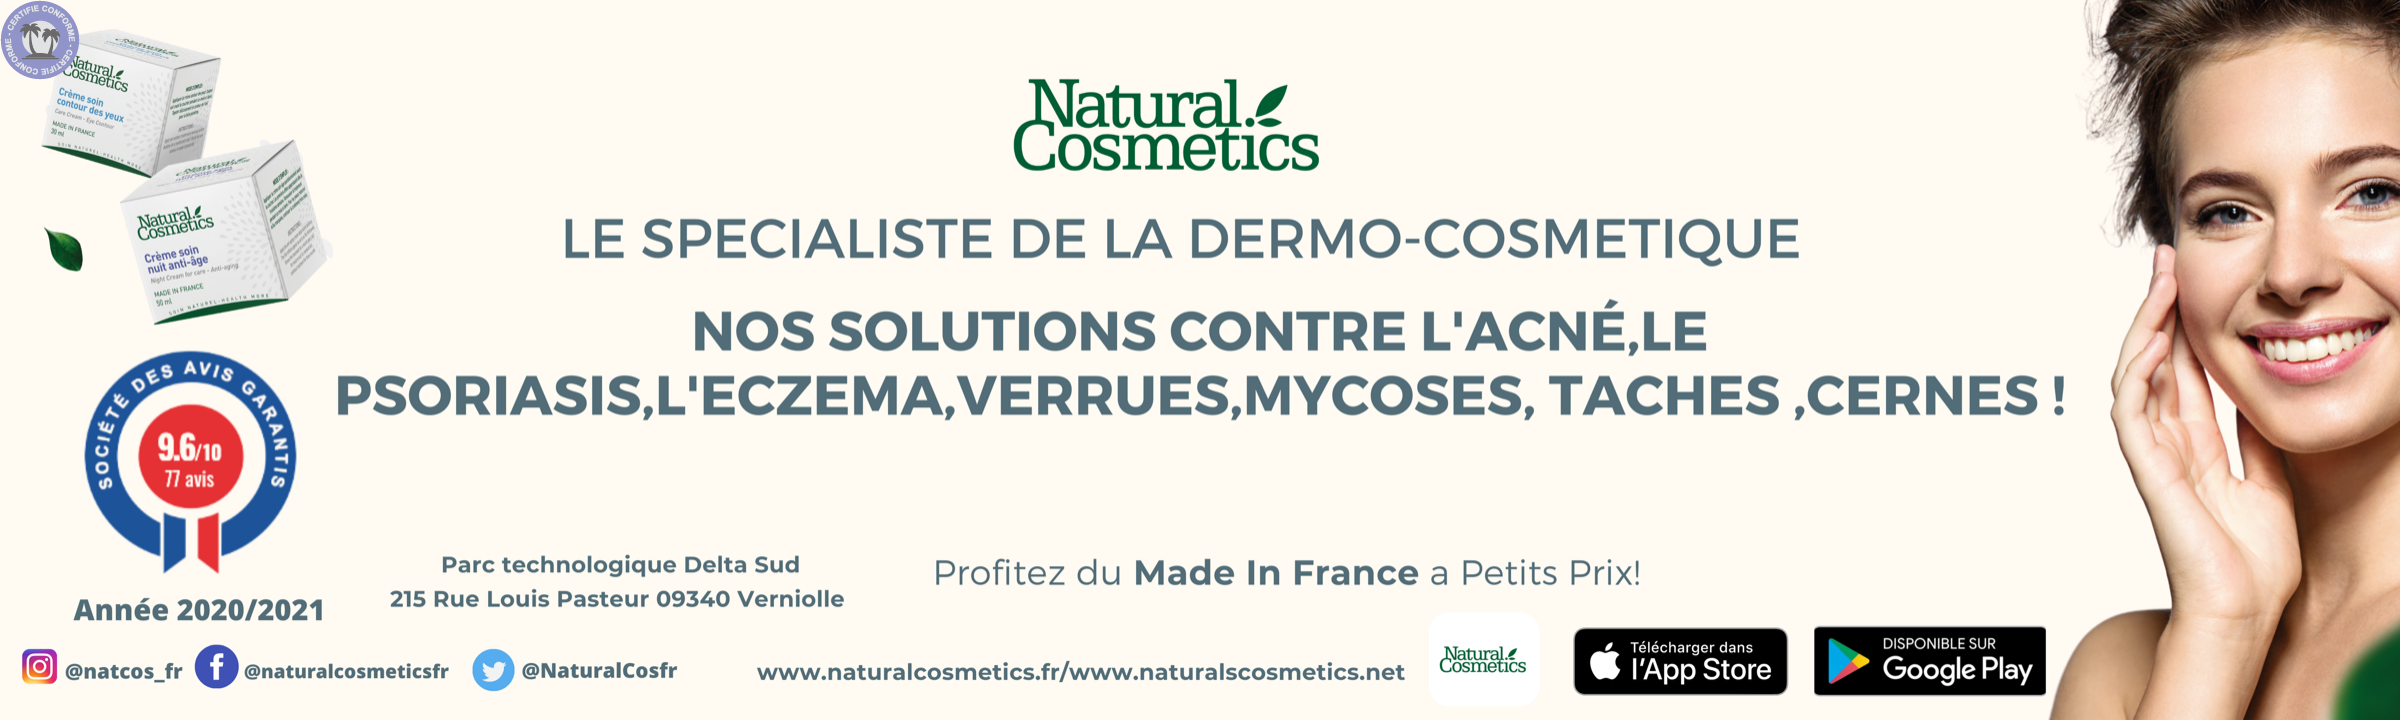 Soins-naturels-Bio-Occitanie-Ariege-Cosmetiques-de-soin-de-peau-naturels-et-Made-In-France0182033475060616876.png